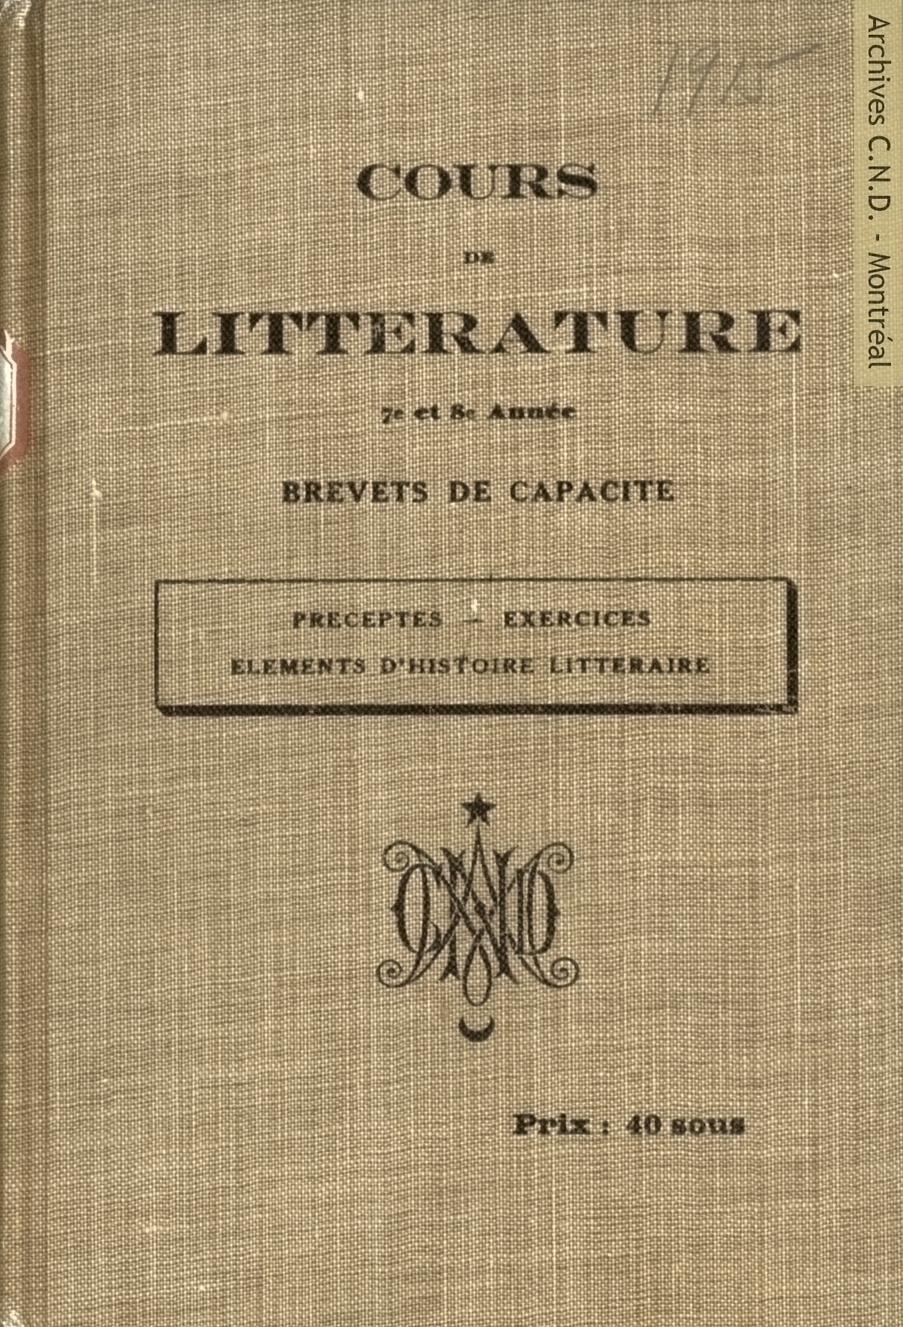 Cover page - Cours de littérature -7e et 8e année - Brevet de capacité (文学、7年生～8年生の能力検定講座）